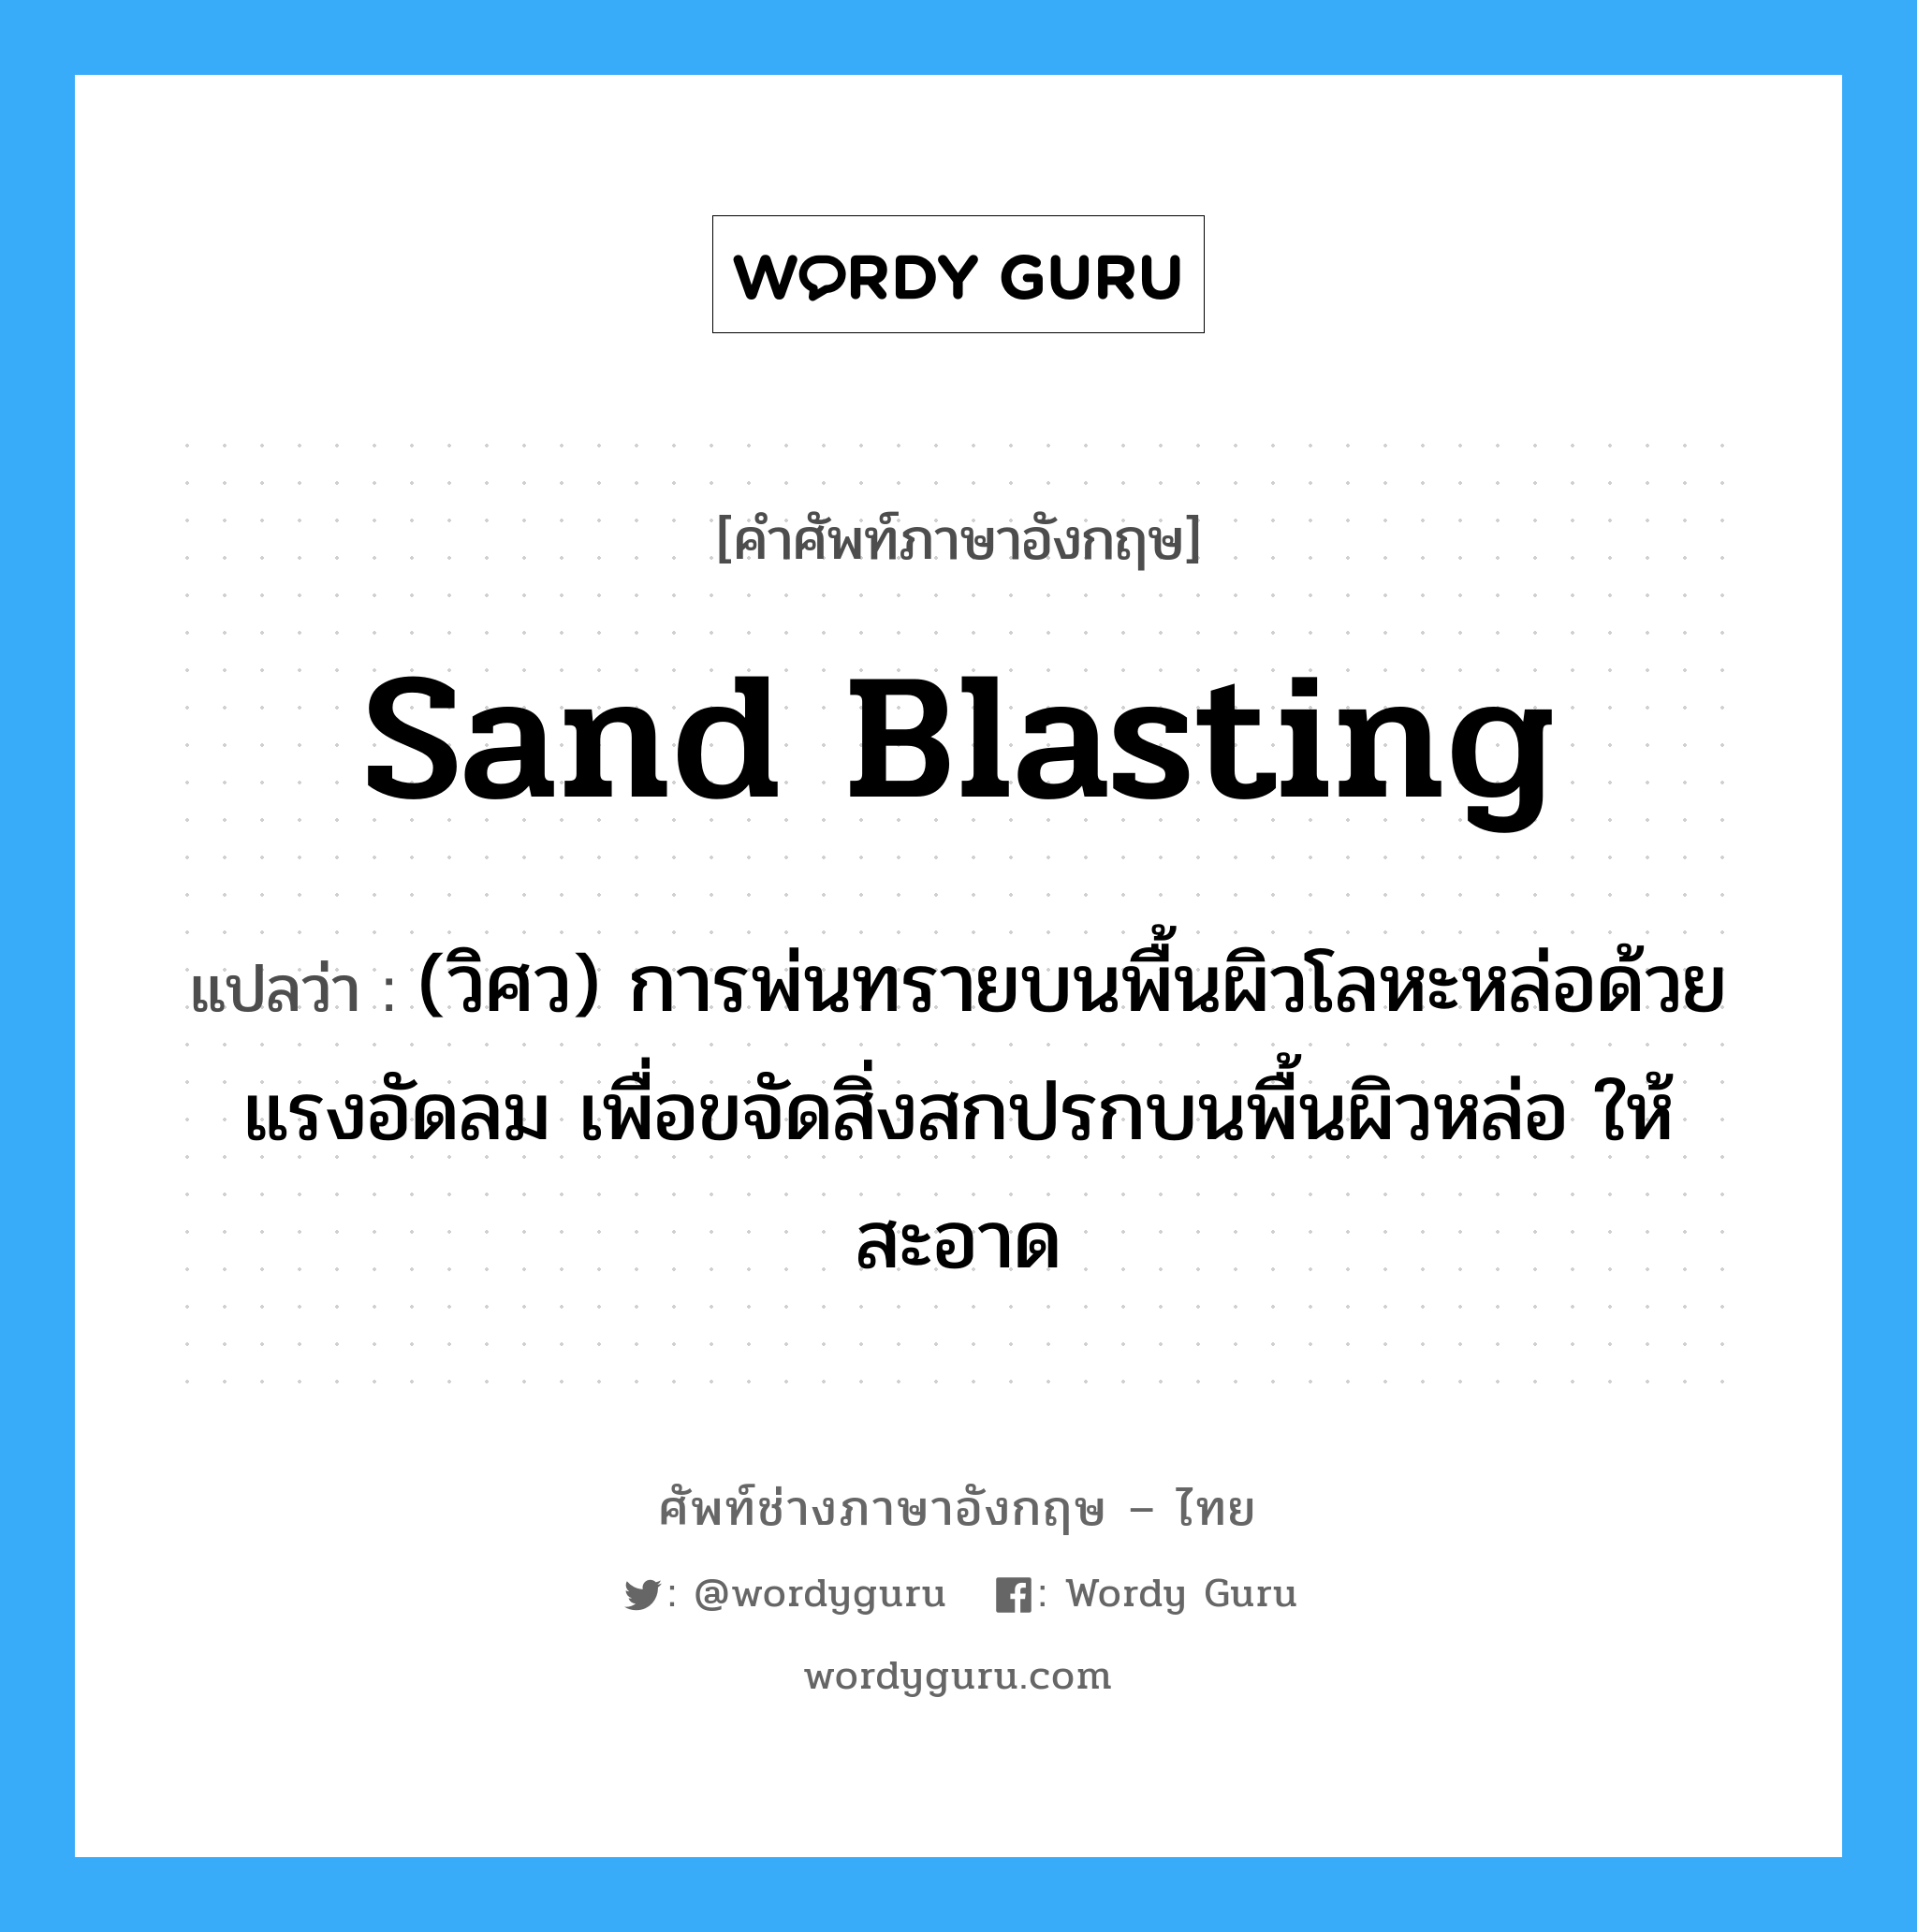 sand blasting แปลว่า?, คำศัพท์ช่างภาษาอังกฤษ - ไทย sand blasting คำศัพท์ภาษาอังกฤษ sand blasting แปลว่า (วิศว) การพ่นทรายบนพื้นผิวโลหะหล่อด้วยแรงอัดลม เพื่อขจัดสิ่งสกปรกบนพื้นผิวหล่อ ให้สะอาด